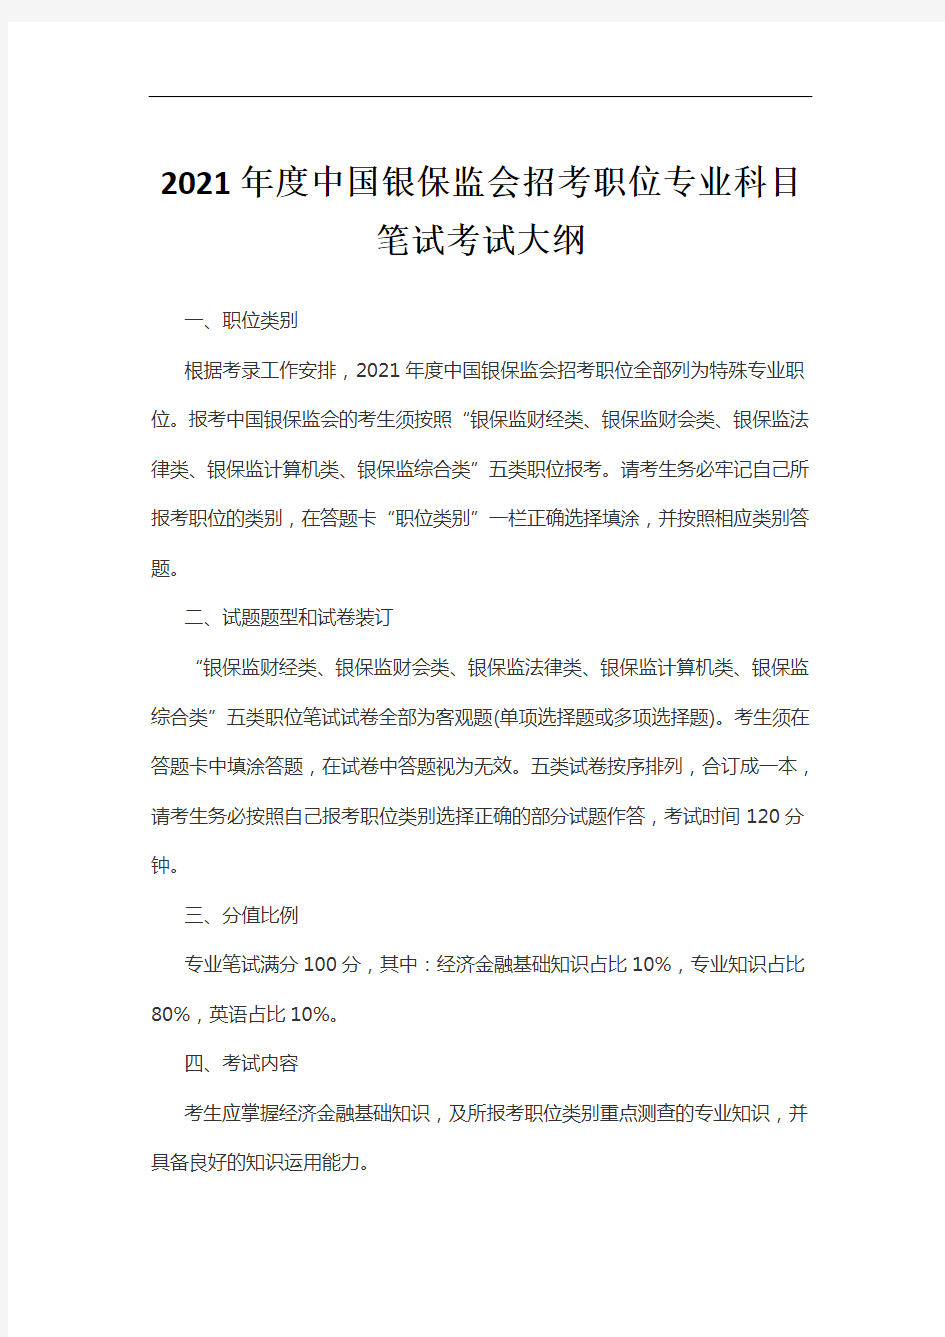 2021年度中国银保监会招考职位专业科目笔试考试大纲